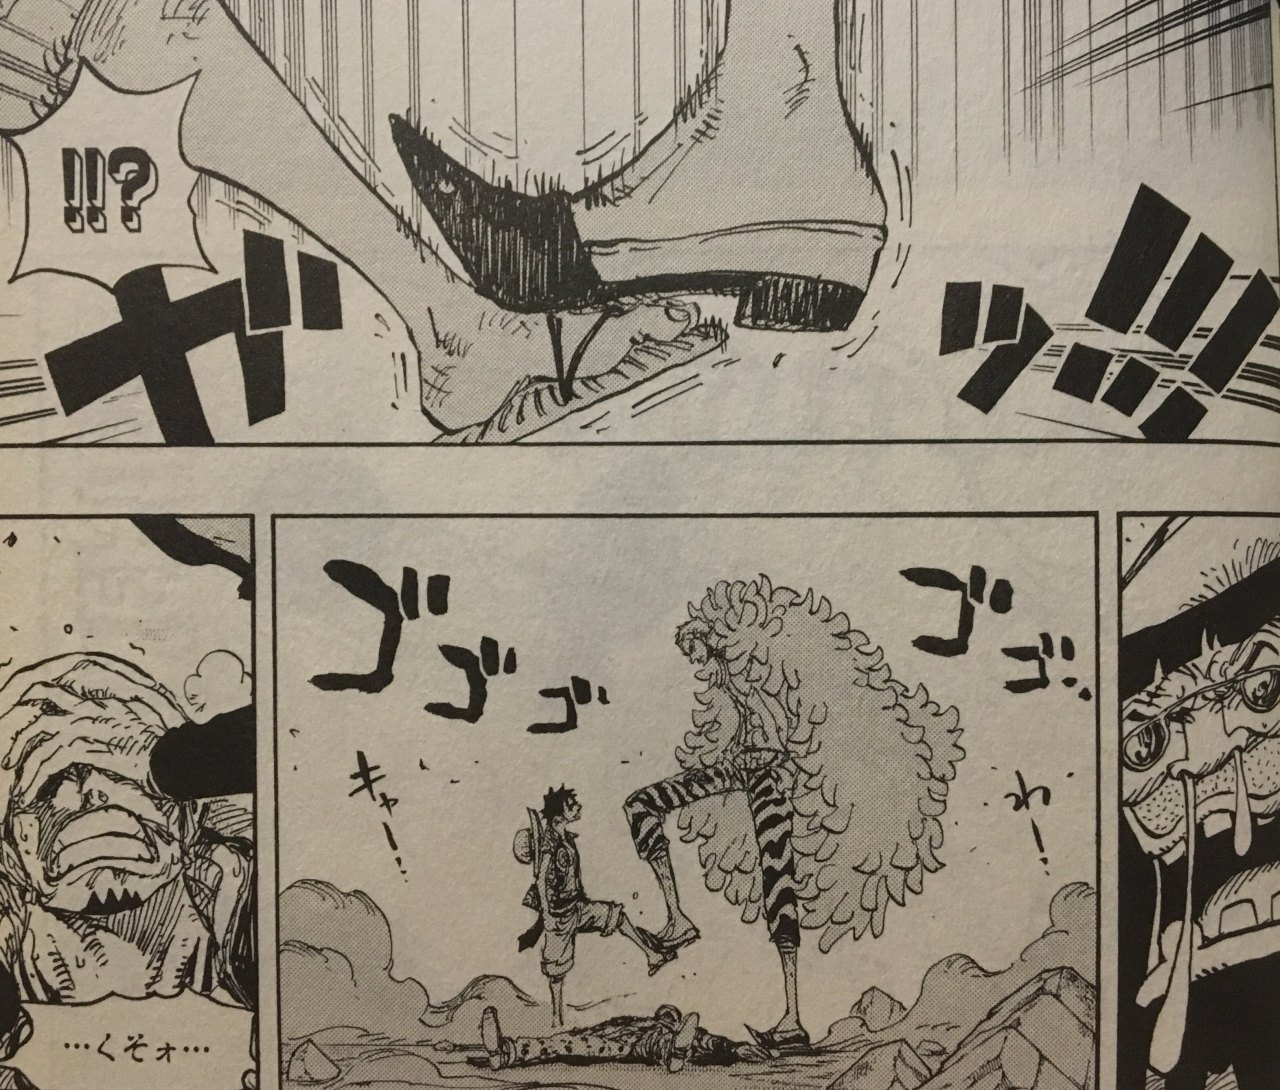 Toda semana uma referência a Ashita no Joe - Anime: One Piece (episódio  217, preview do ep 218)